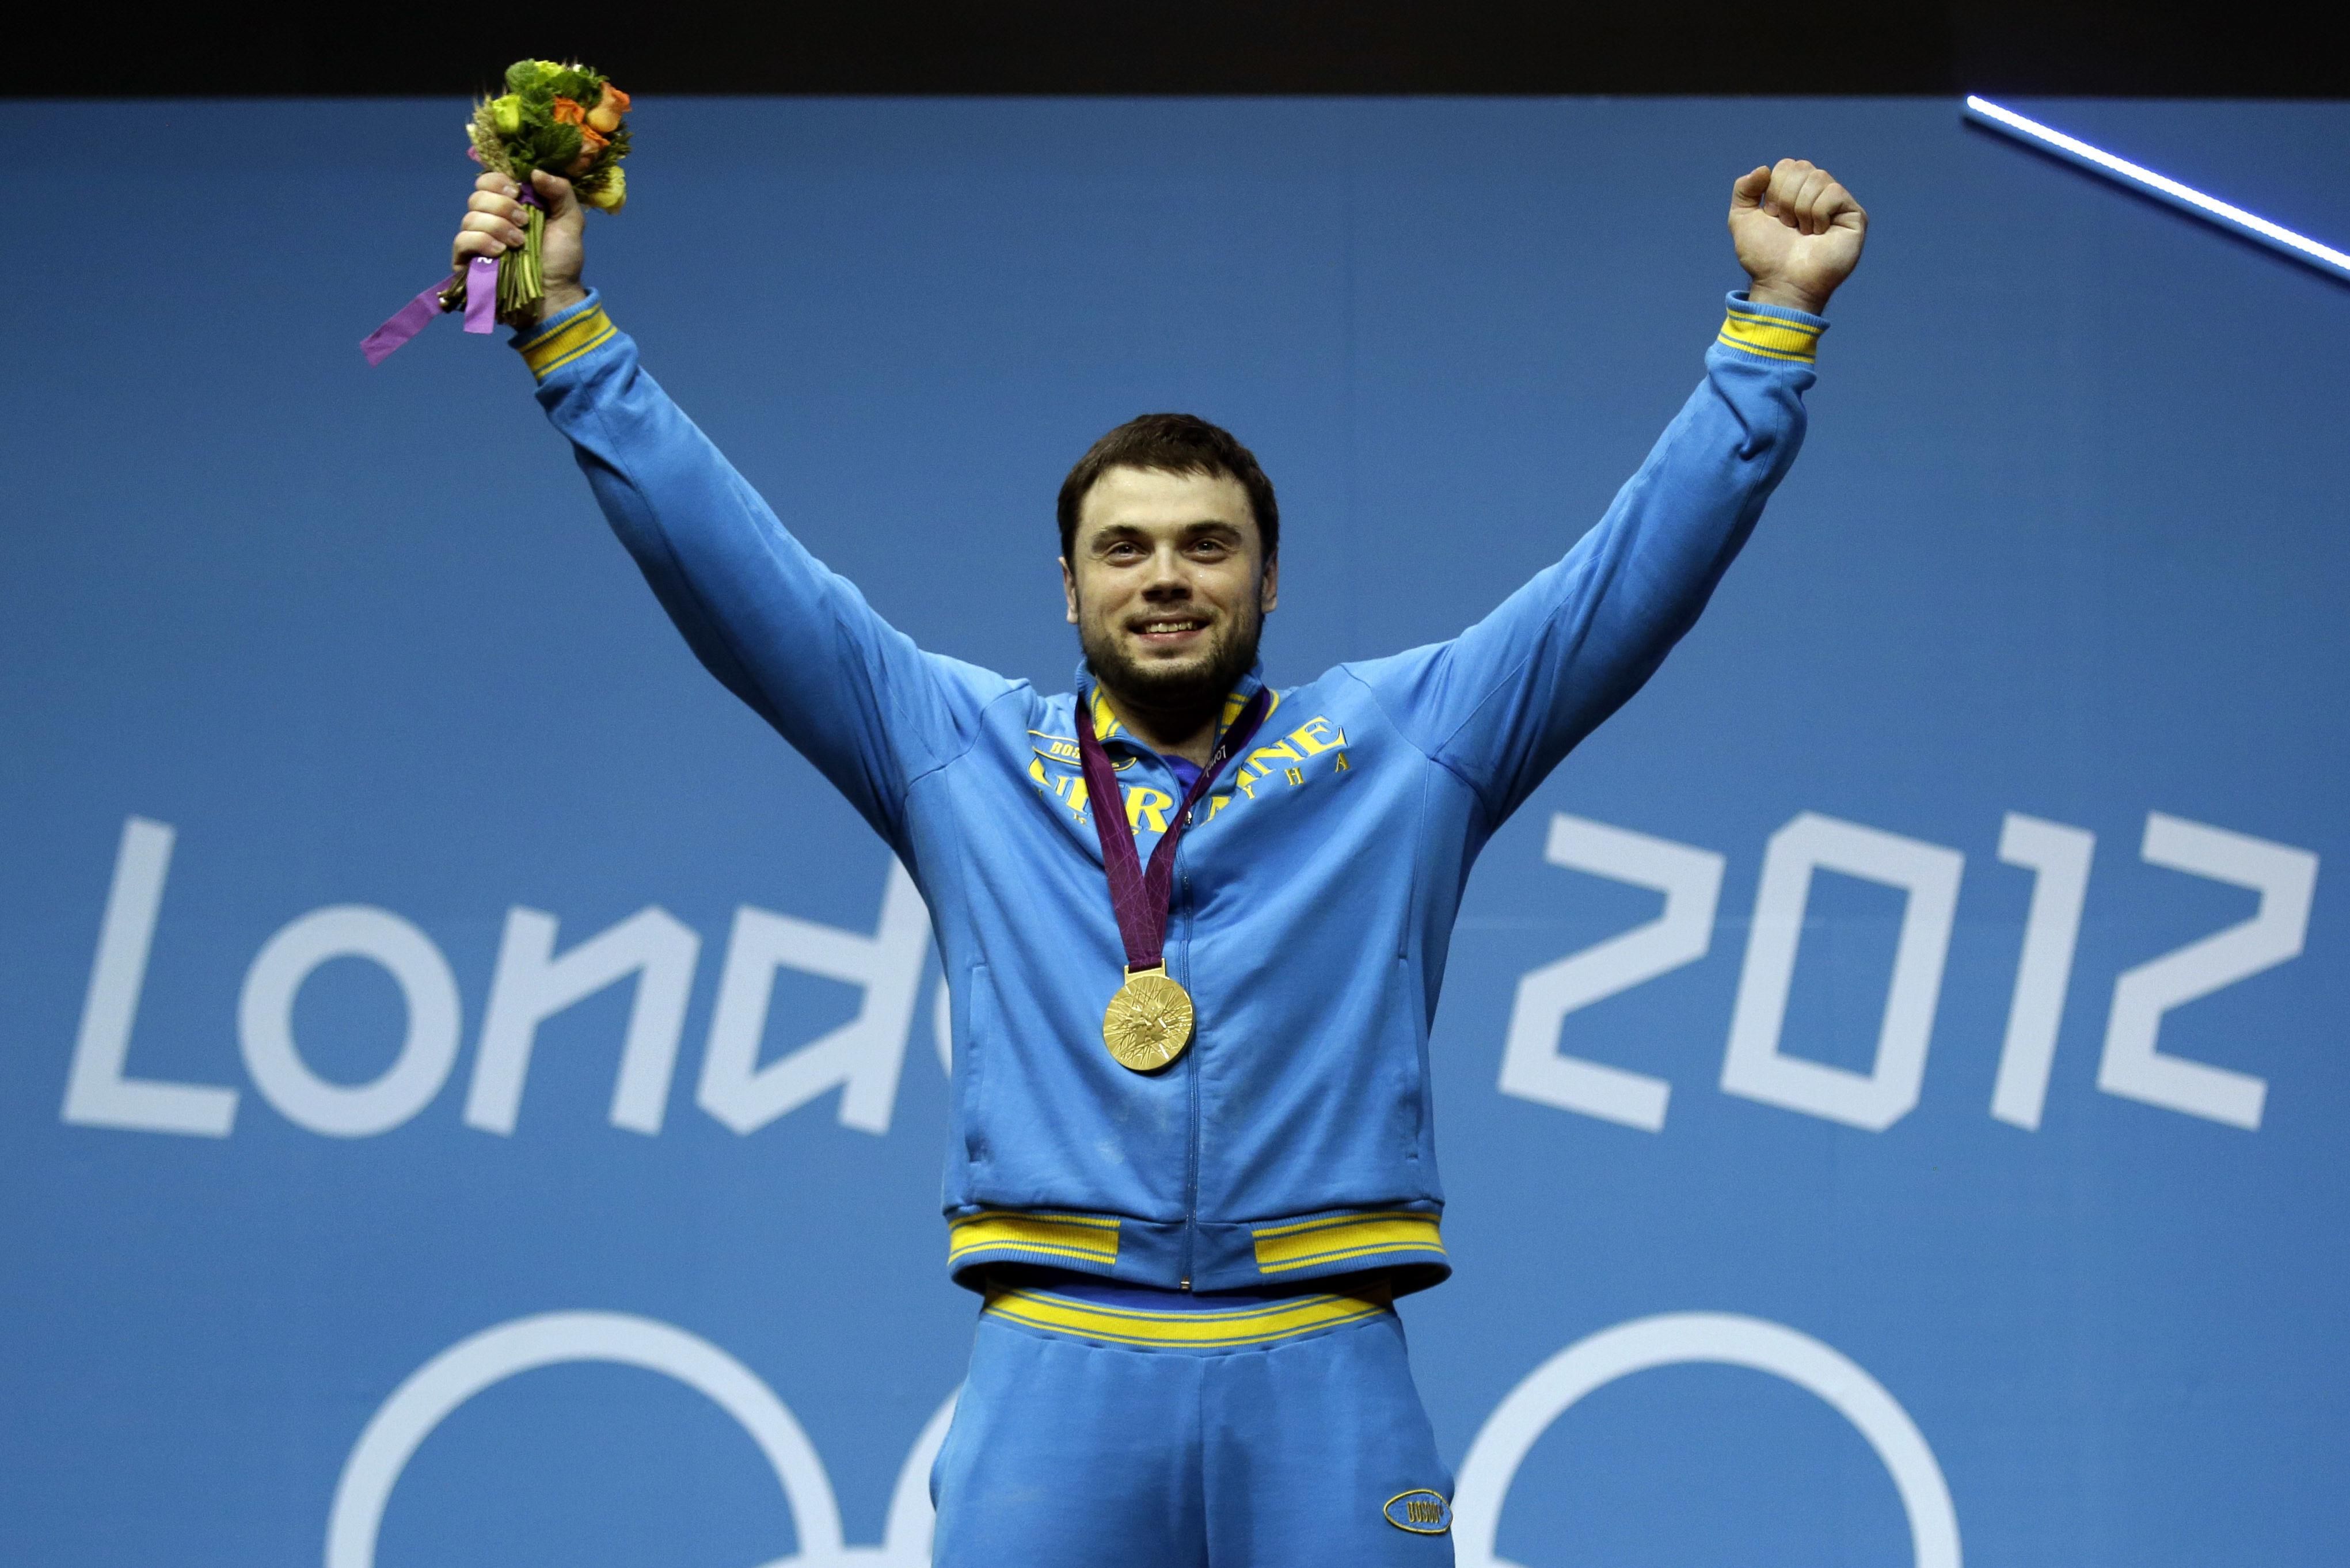 Україну можуть позбавити олімпійського золота в Лондоні через допінг